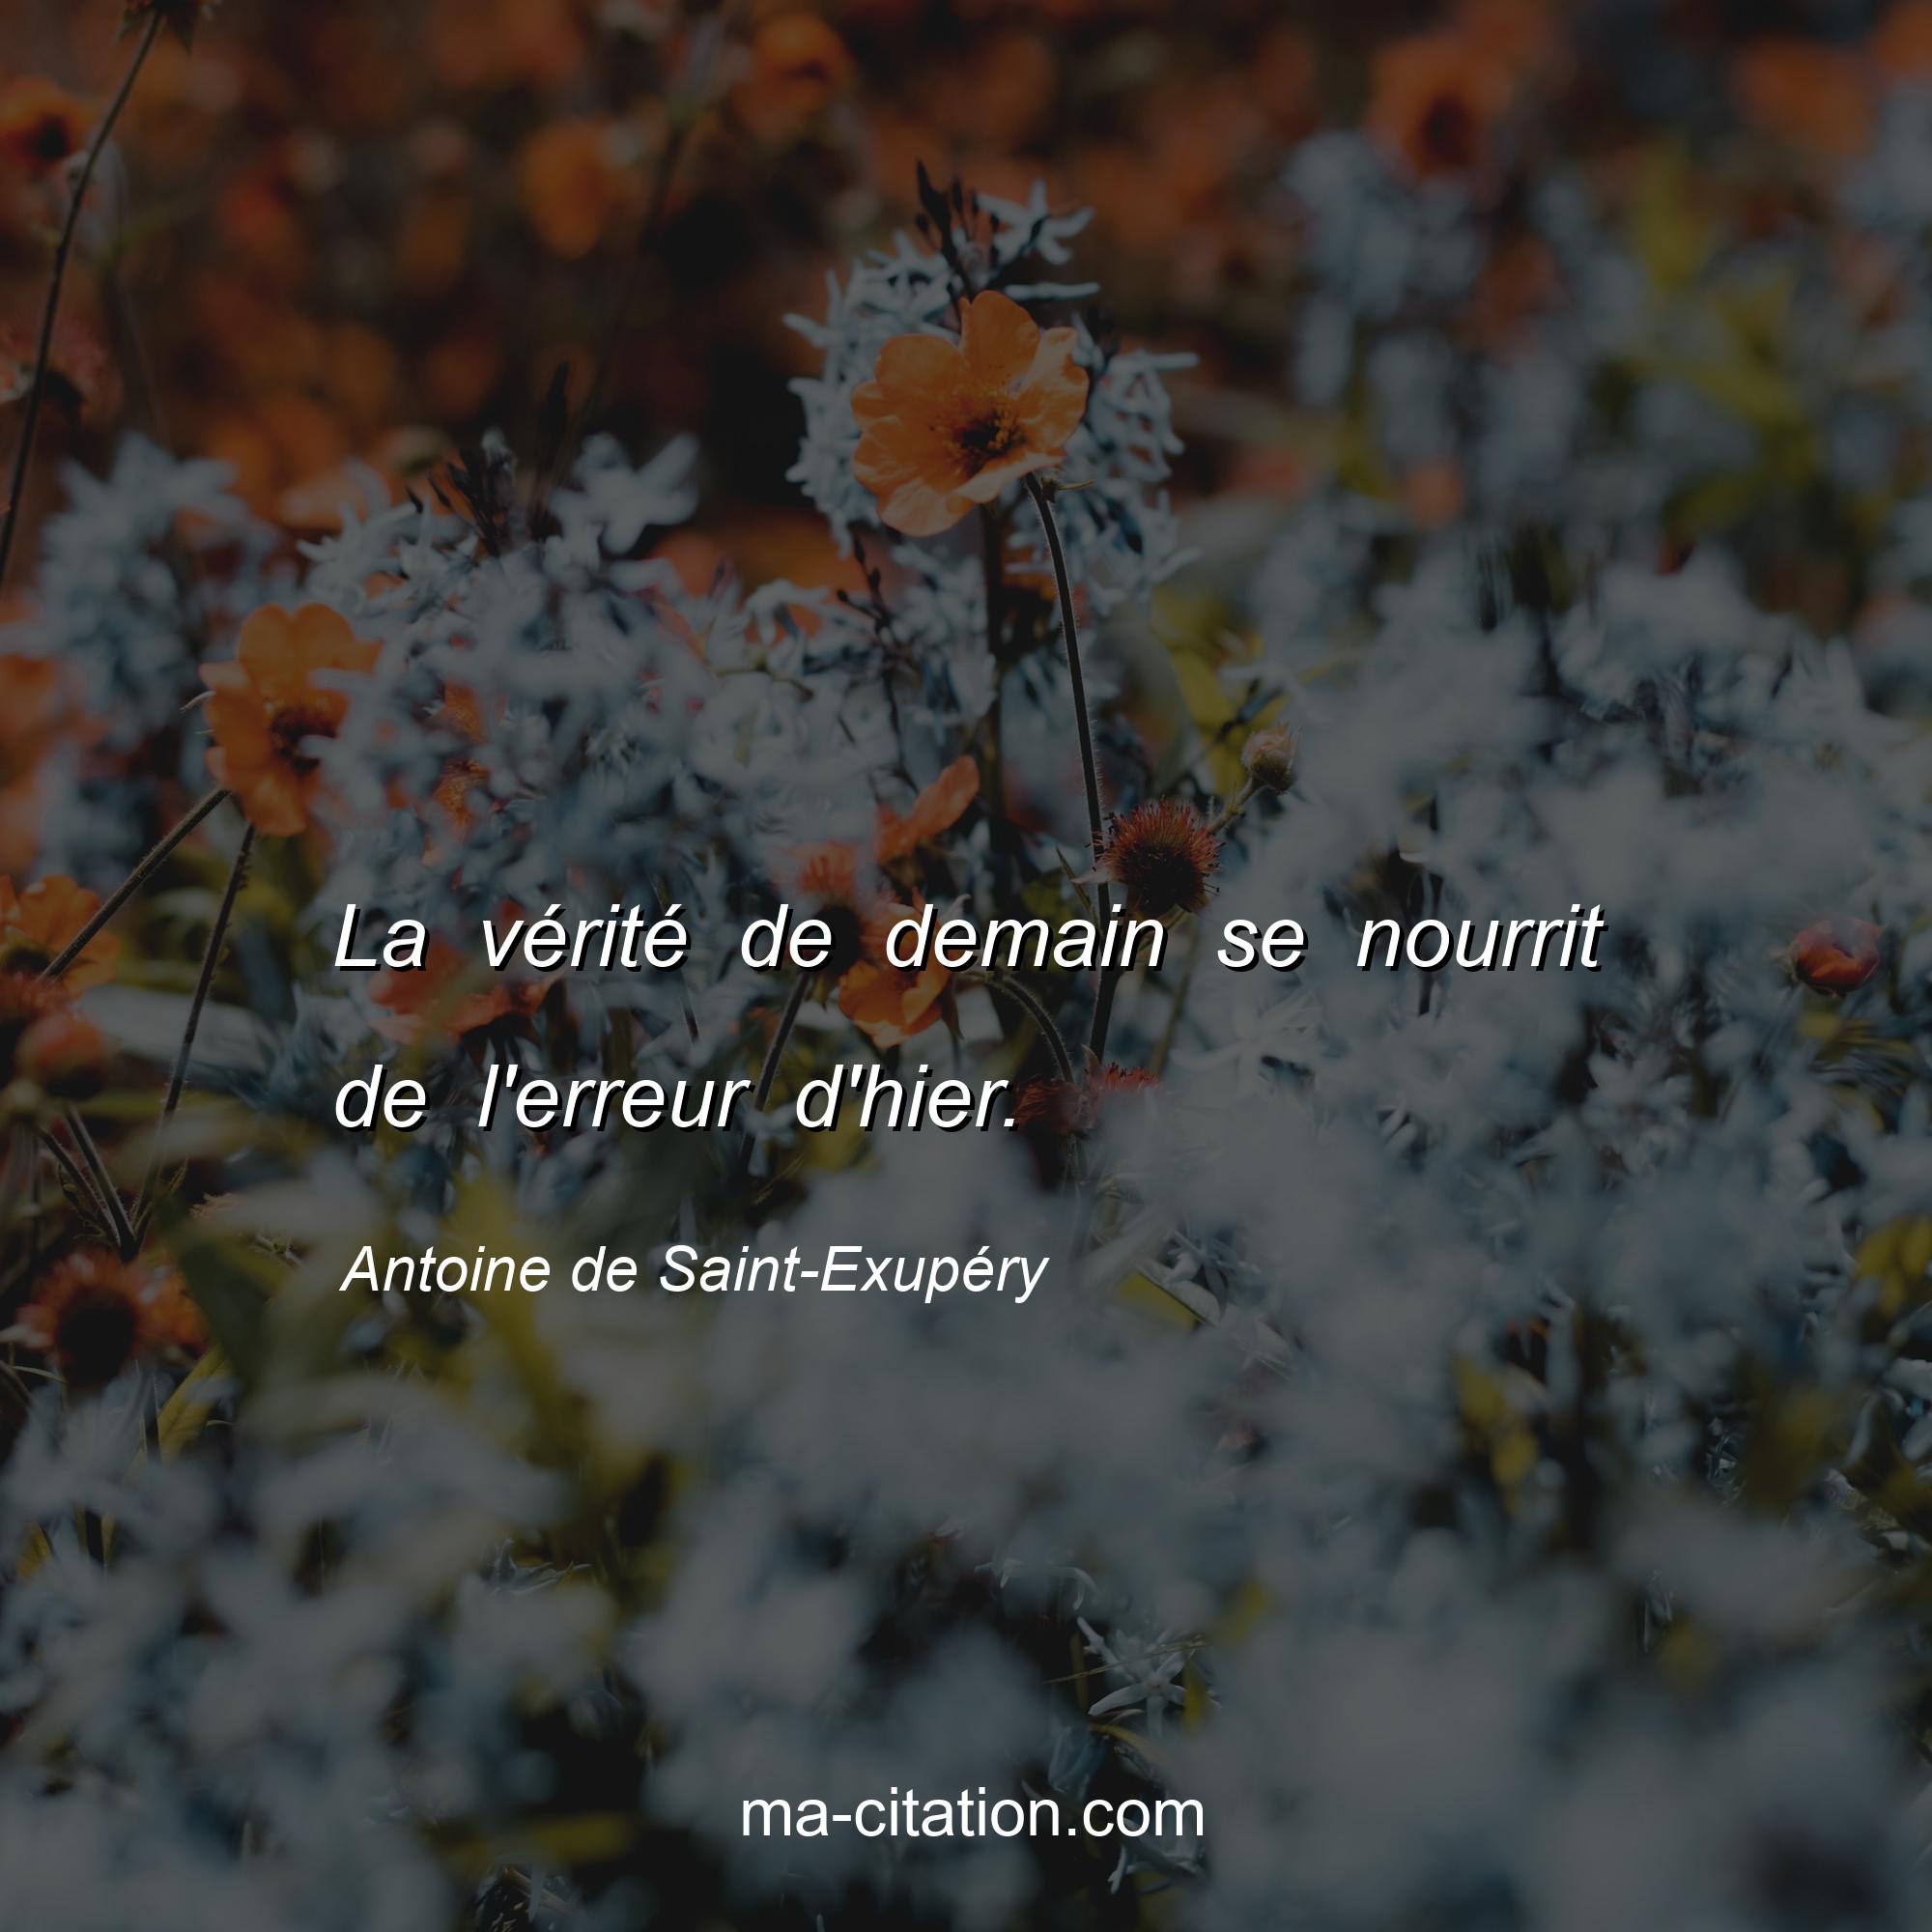 Antoine de Saint-Exupéry : La vérité de demain se nourrit de l'erreur d'hier.